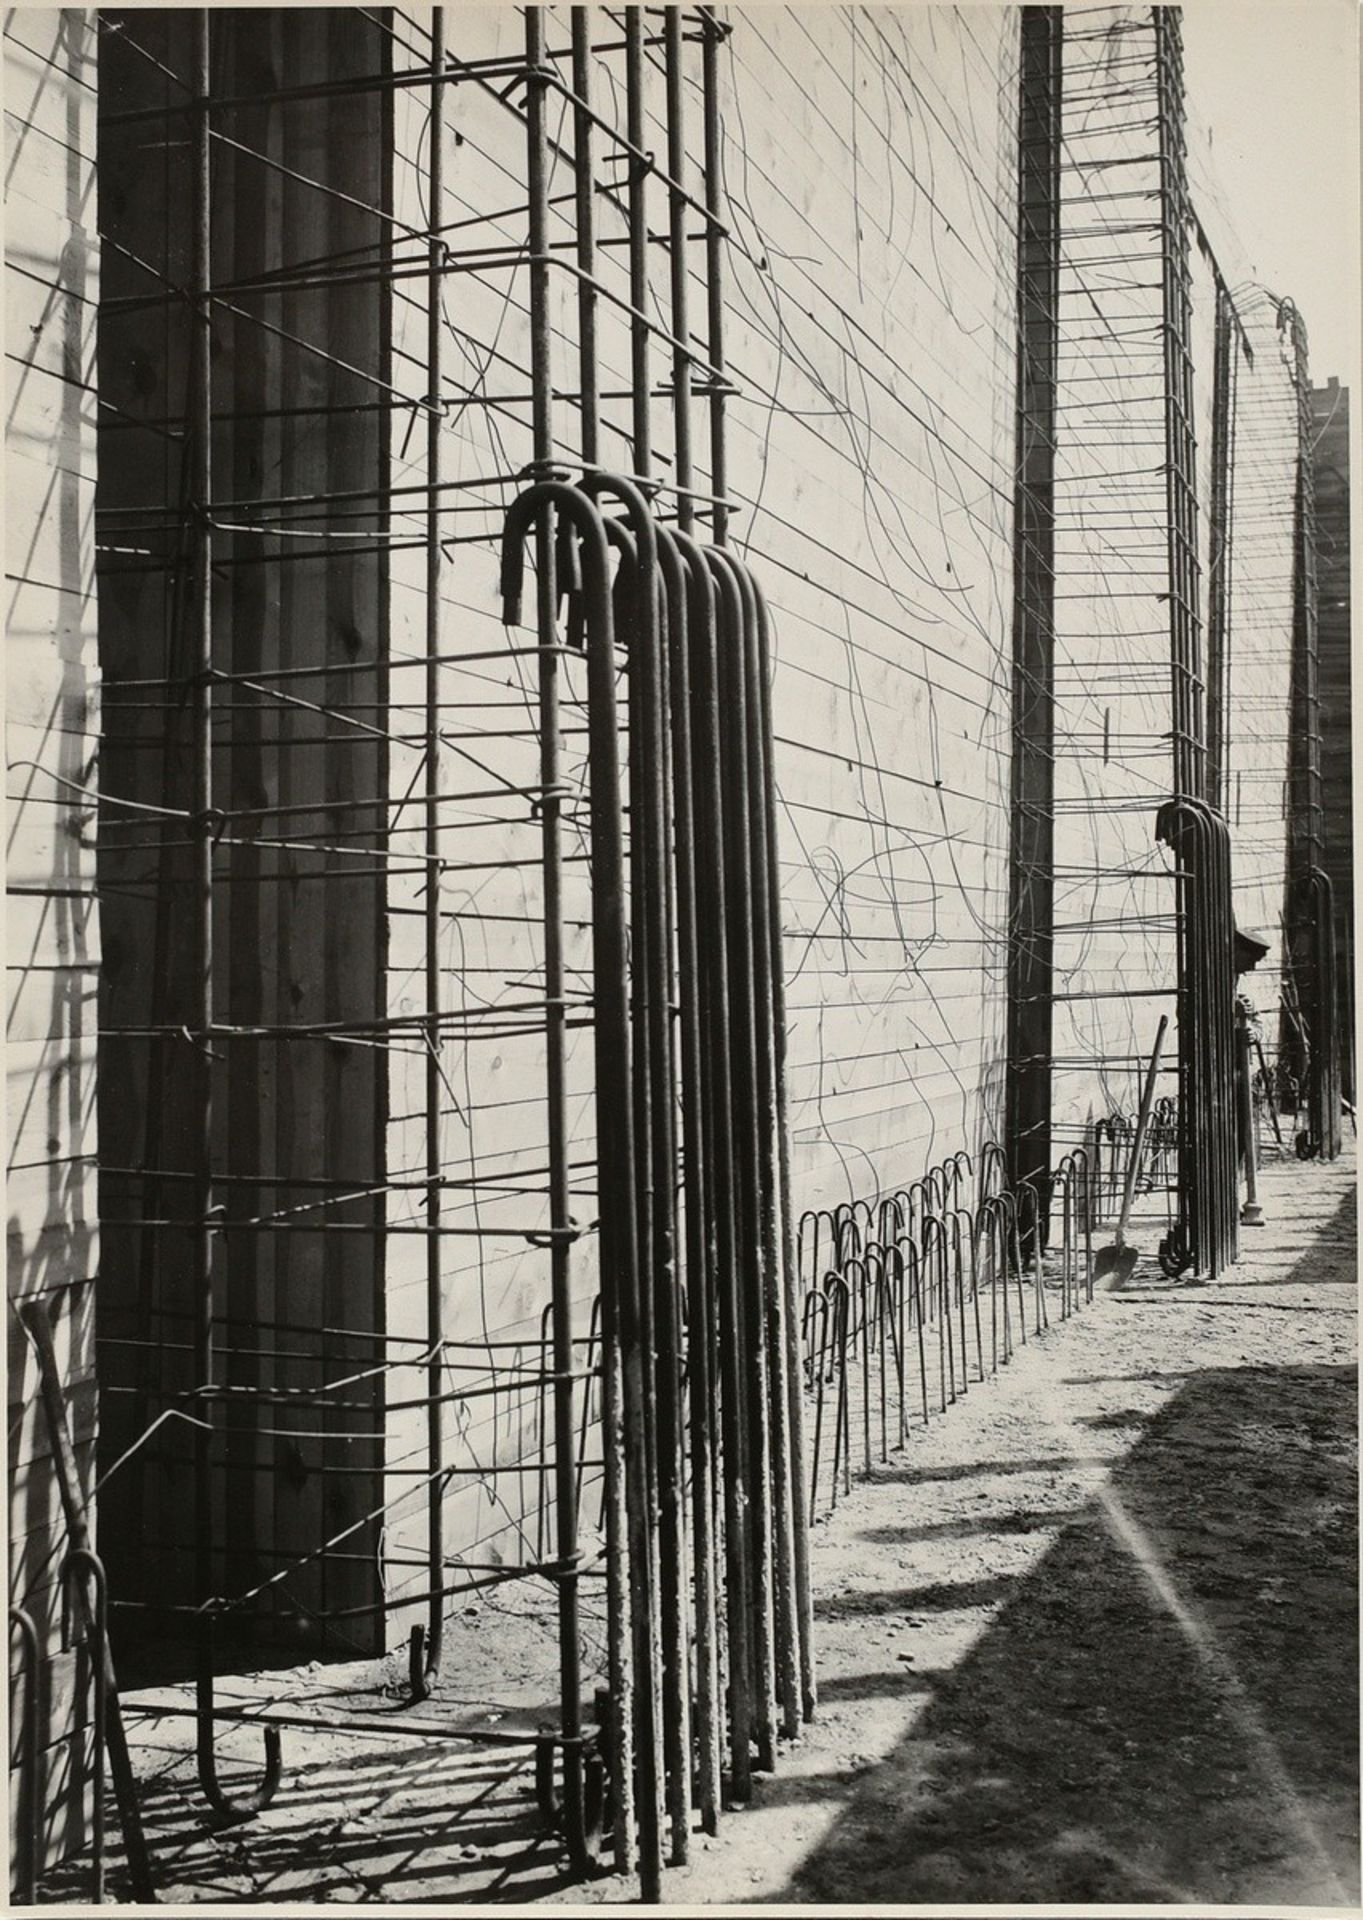 31 Renger-Patzsch, Albert (1897-1966) "Architectural Studies" (concrete and bridge construction), p - Image 9 of 18